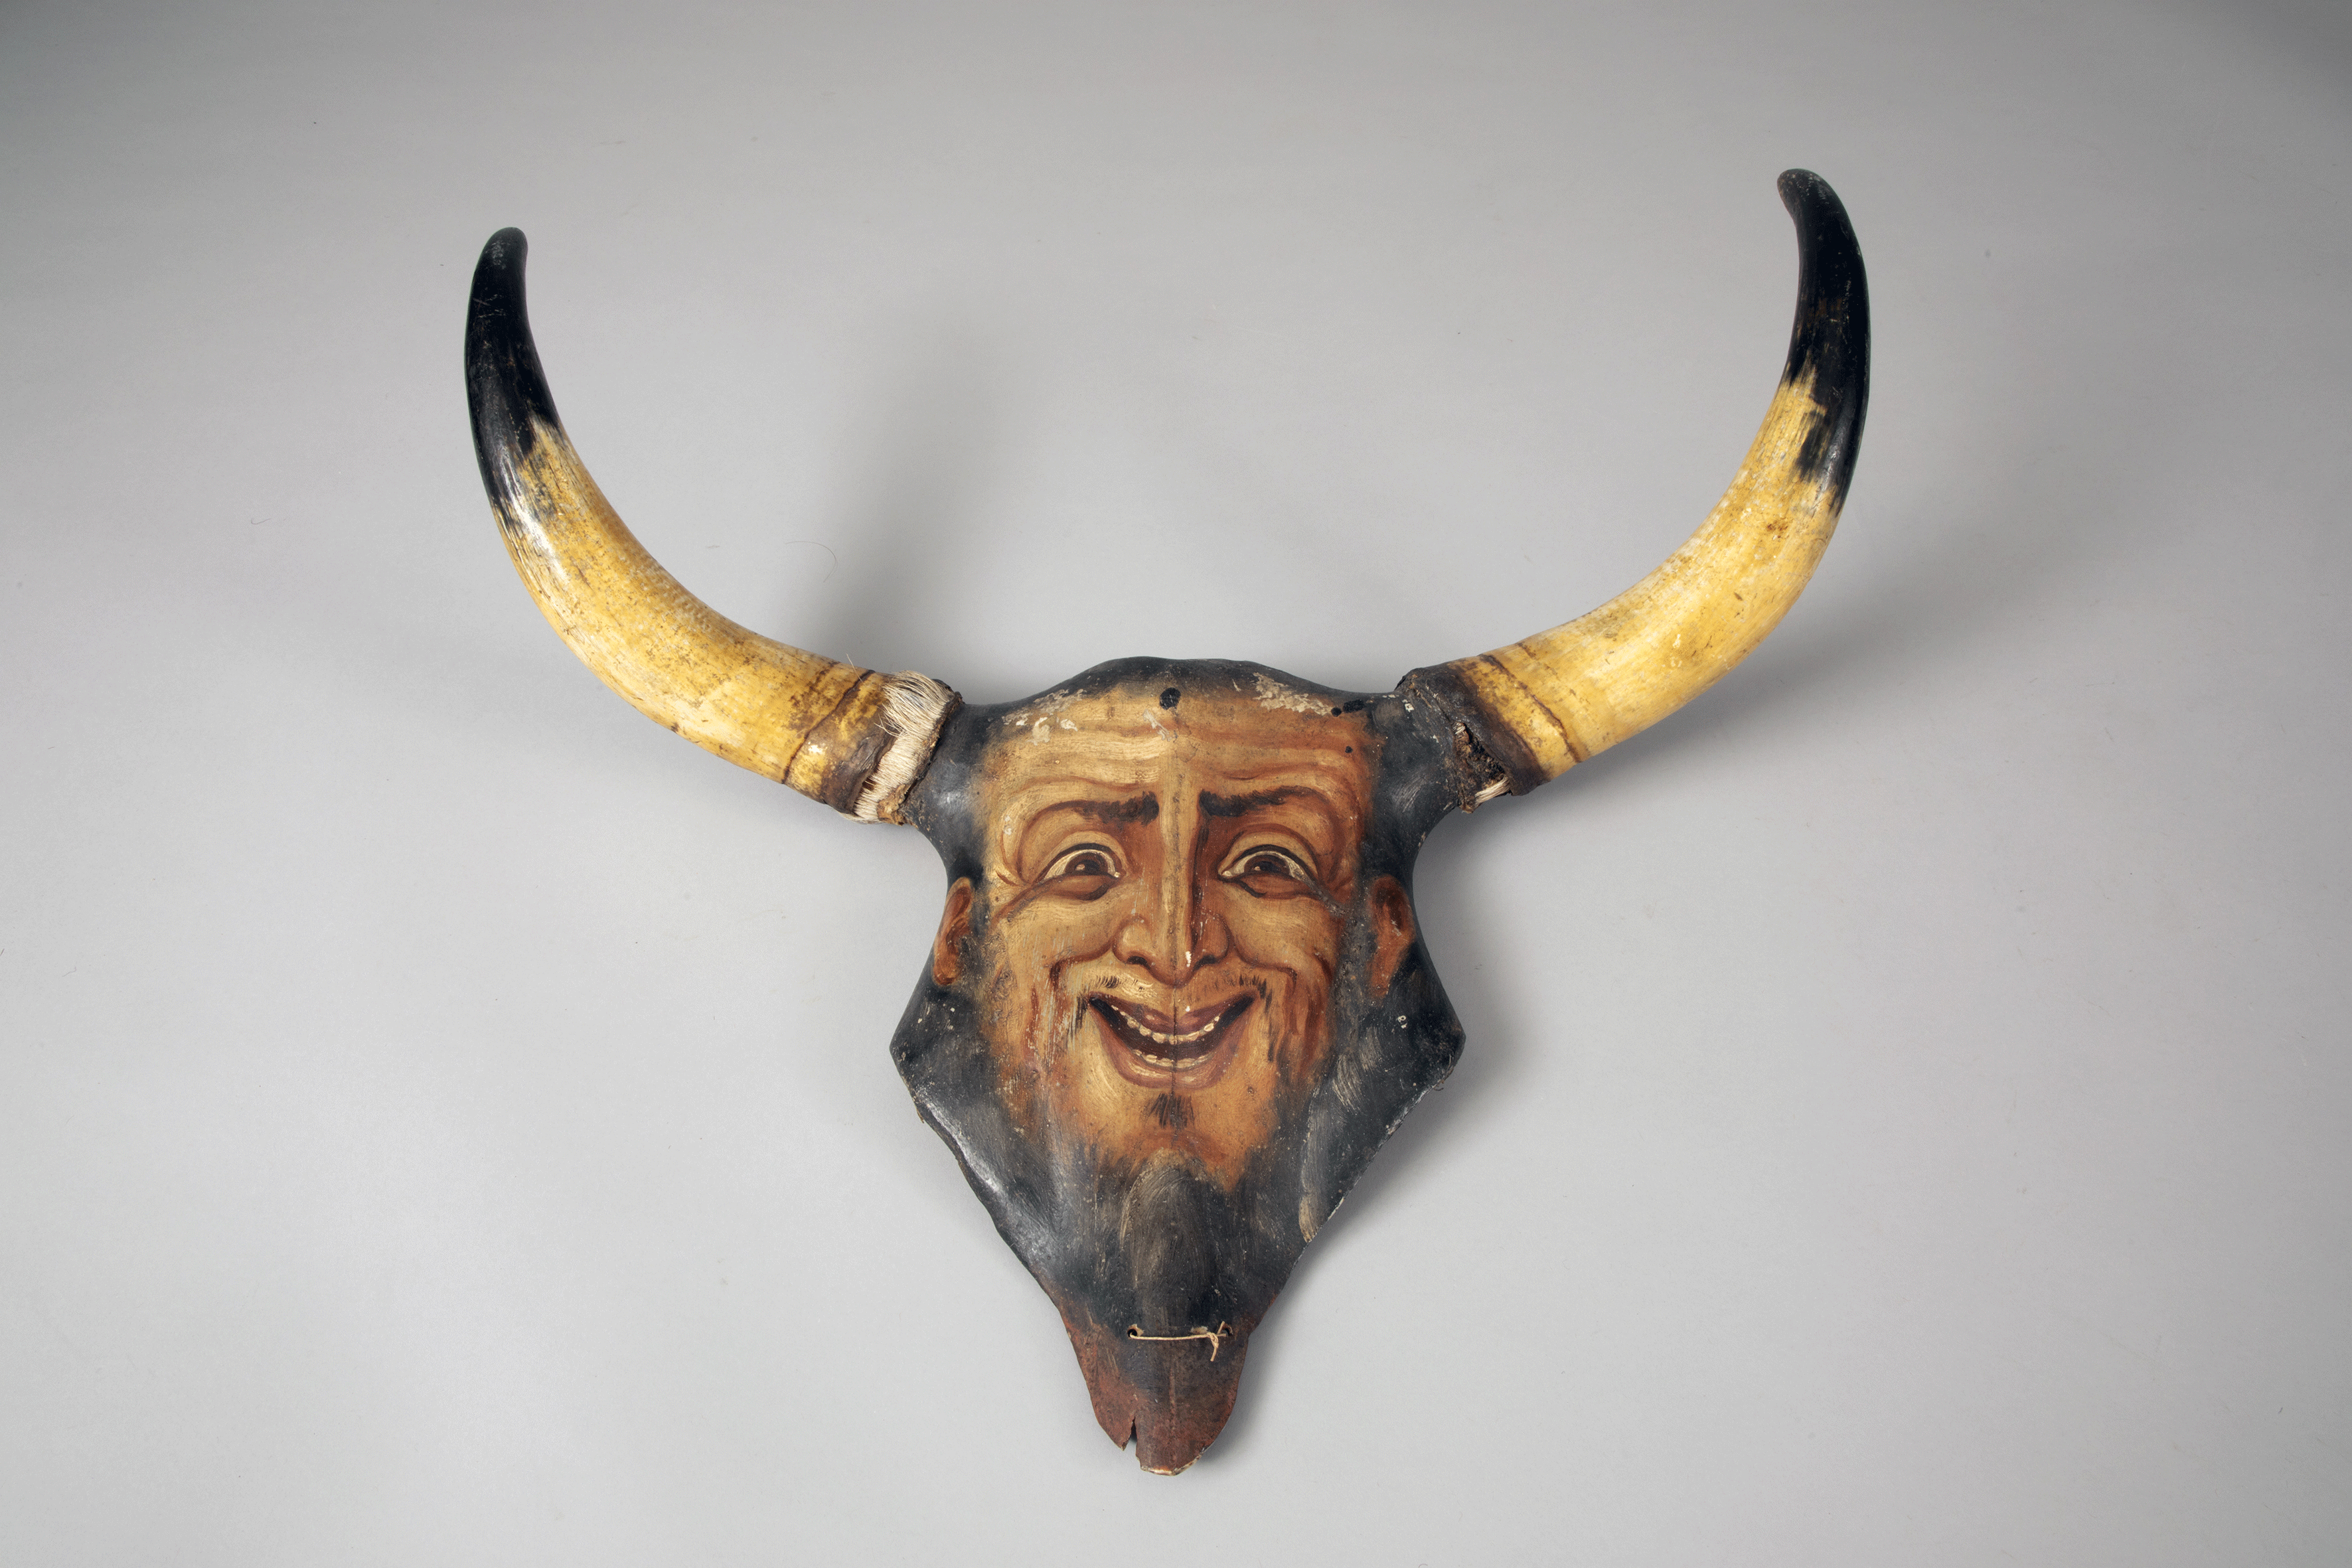 Masque contre le "mauvais œil", Gargano, région des Pouilles, Italie, début du 19e siècle, coll. Julius Konietzko © Museum am Rothenbaum (MARKK), Hamburg